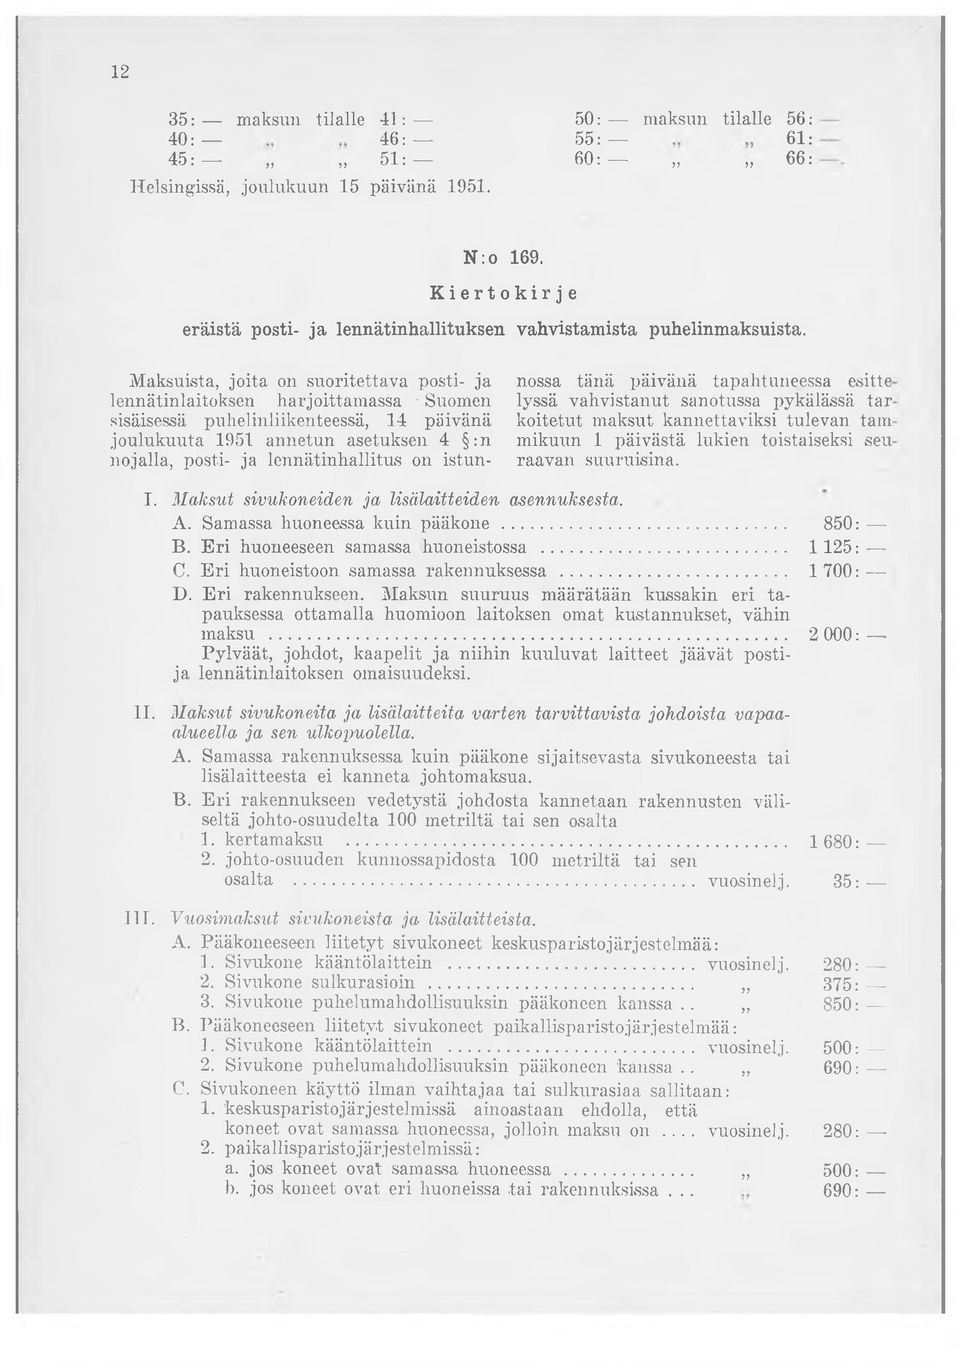 Maksuista, joita on suoritettava posti- ja lennätinlaitoksen harjoittamassa Suomen sisäisessä puhelinliikenteessä, 14 päivänä joulukuuta 1951 annetun asetuksen 4 :n nojalla, posti- ja